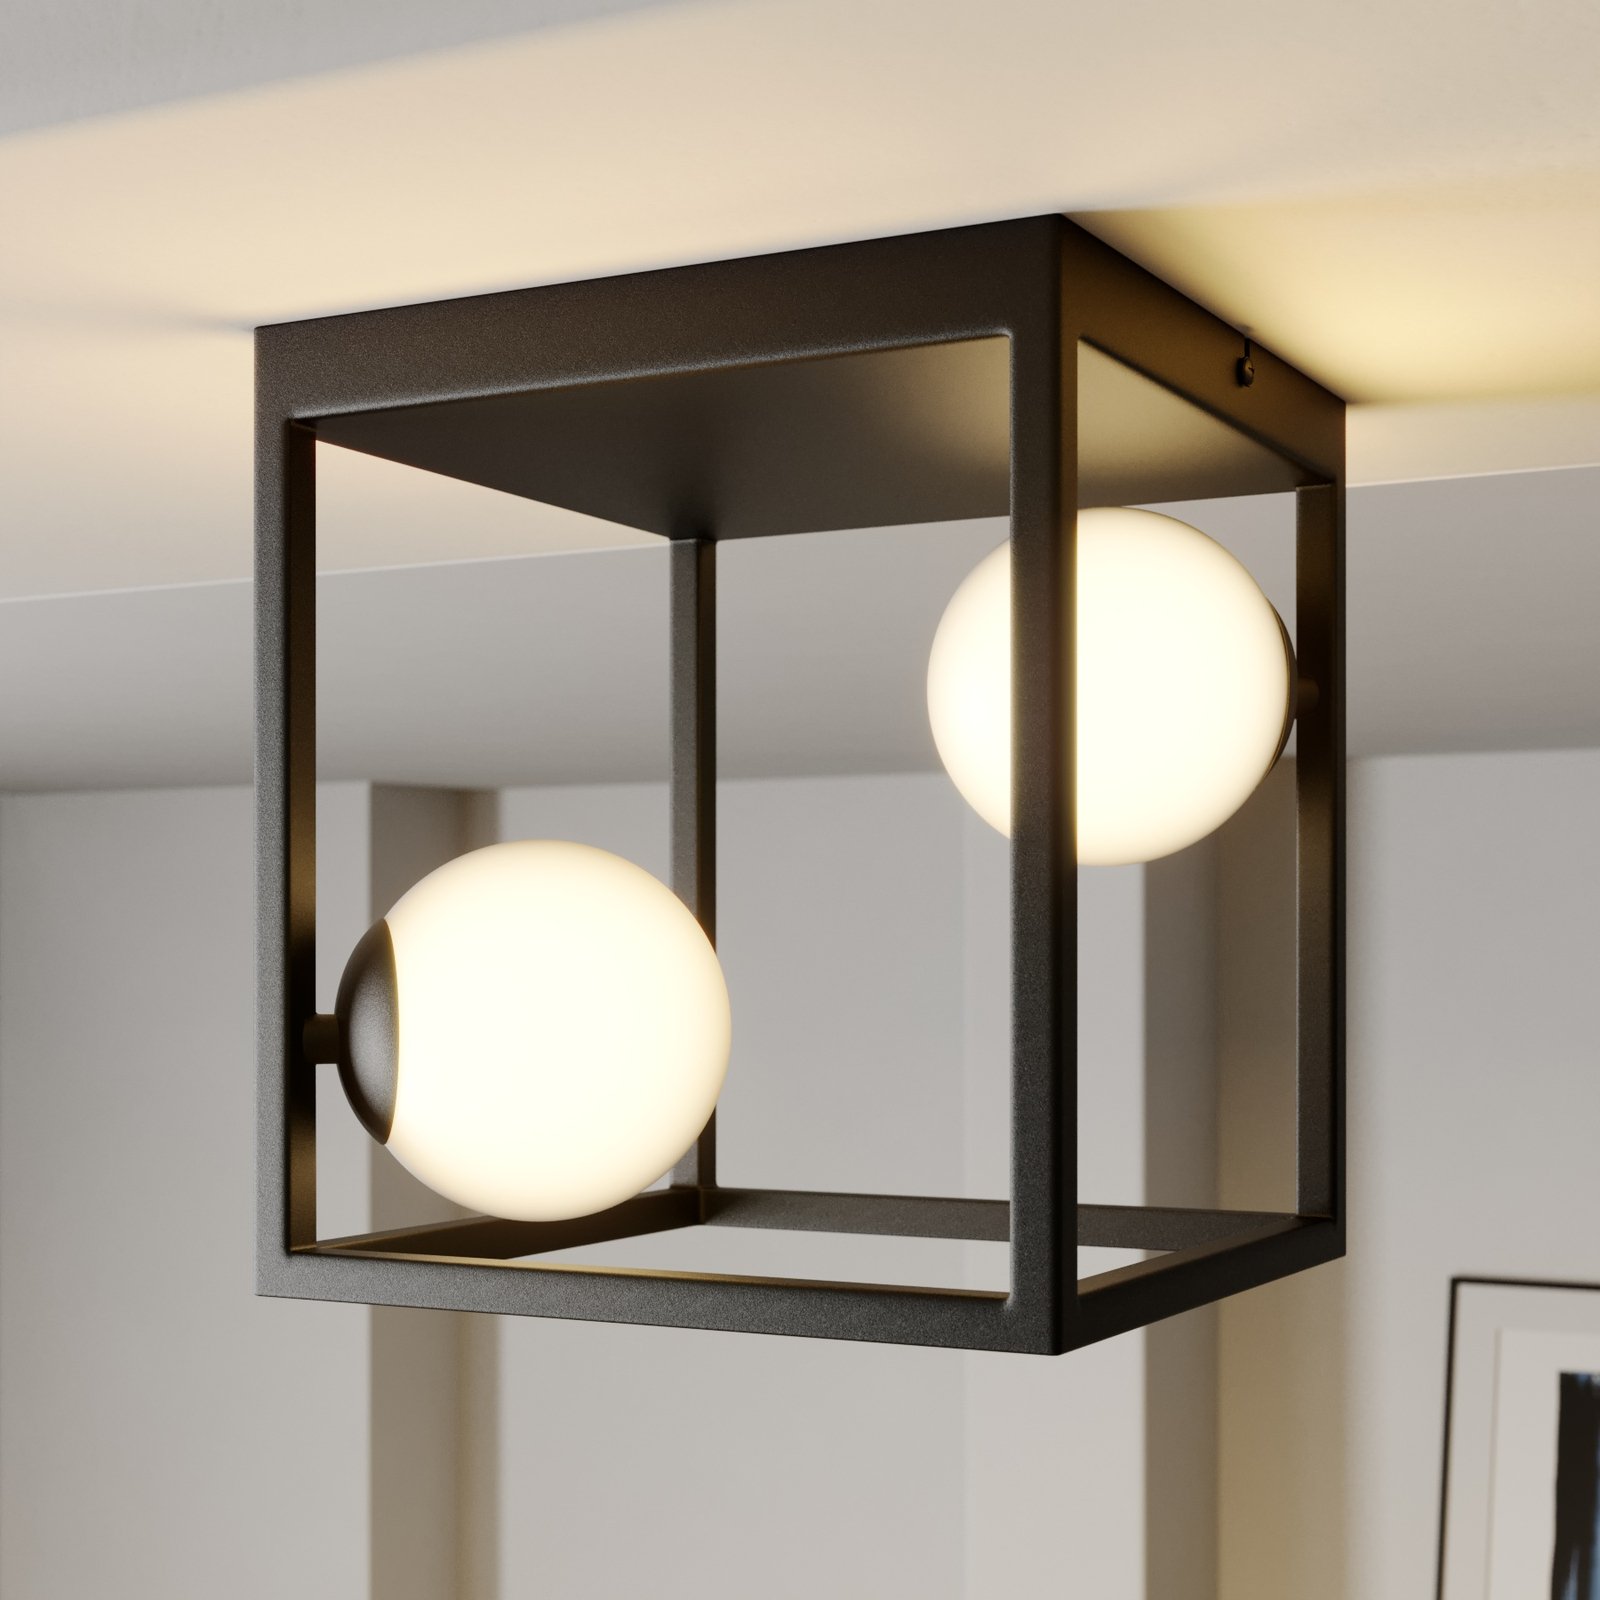 Lampa sufitowa Lindby Utopia, 2-punktowa, szkło, żelazo, 22 cm